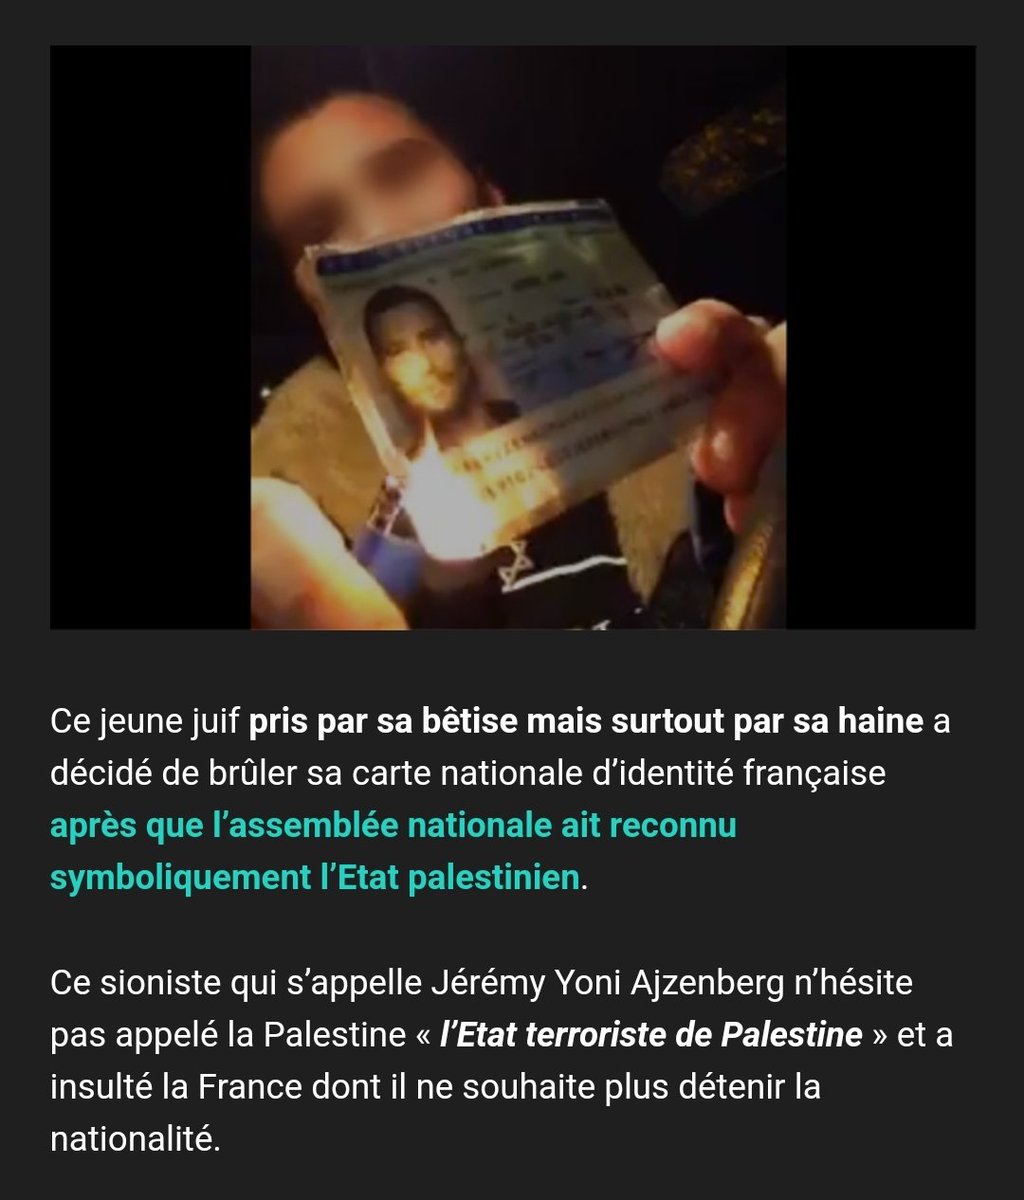 Il s'agit de Jérémy Yoni Ajzenberg qui avait brûlé sa carte d'identité française...
Il ne sera évidemment bien sur pas inquiété pour son geste ni pour ses propos...

#Islamophobie